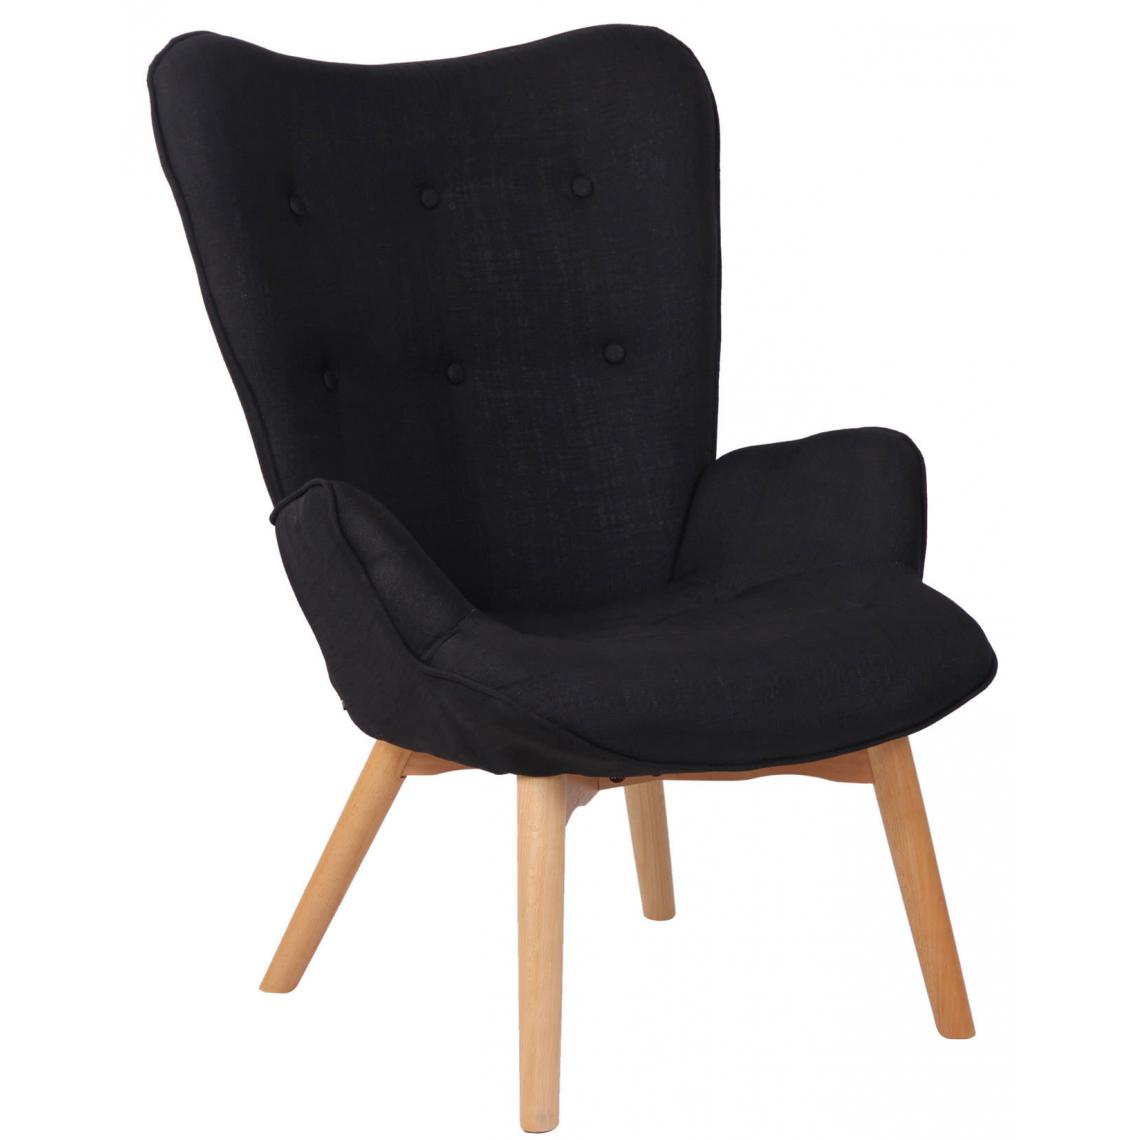 Icaverne - Superbe Chaise longue en tissu edition Quito couleur noir - Chaises